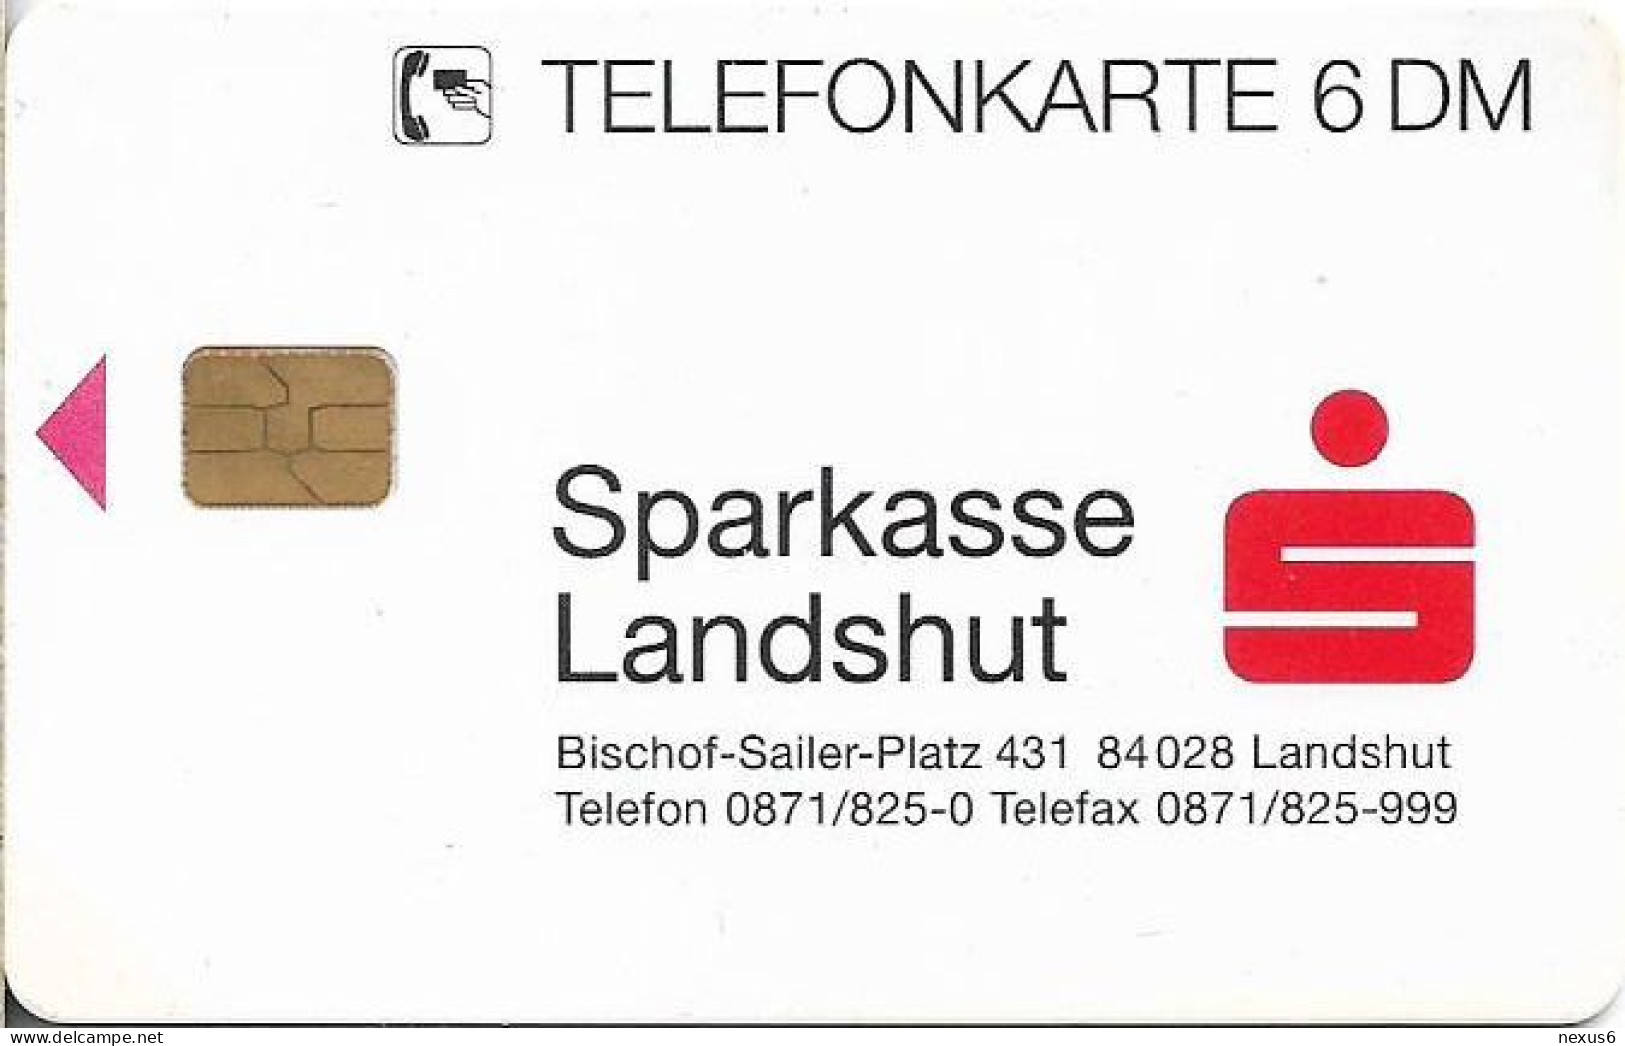 Germany - Sparkasse Landshut - Gebäude - O 1069 - 09.1996, 6DM, 2.000ex, Used - O-Series: Kundenserie Vom Sammlerservice Ausgeschlossen